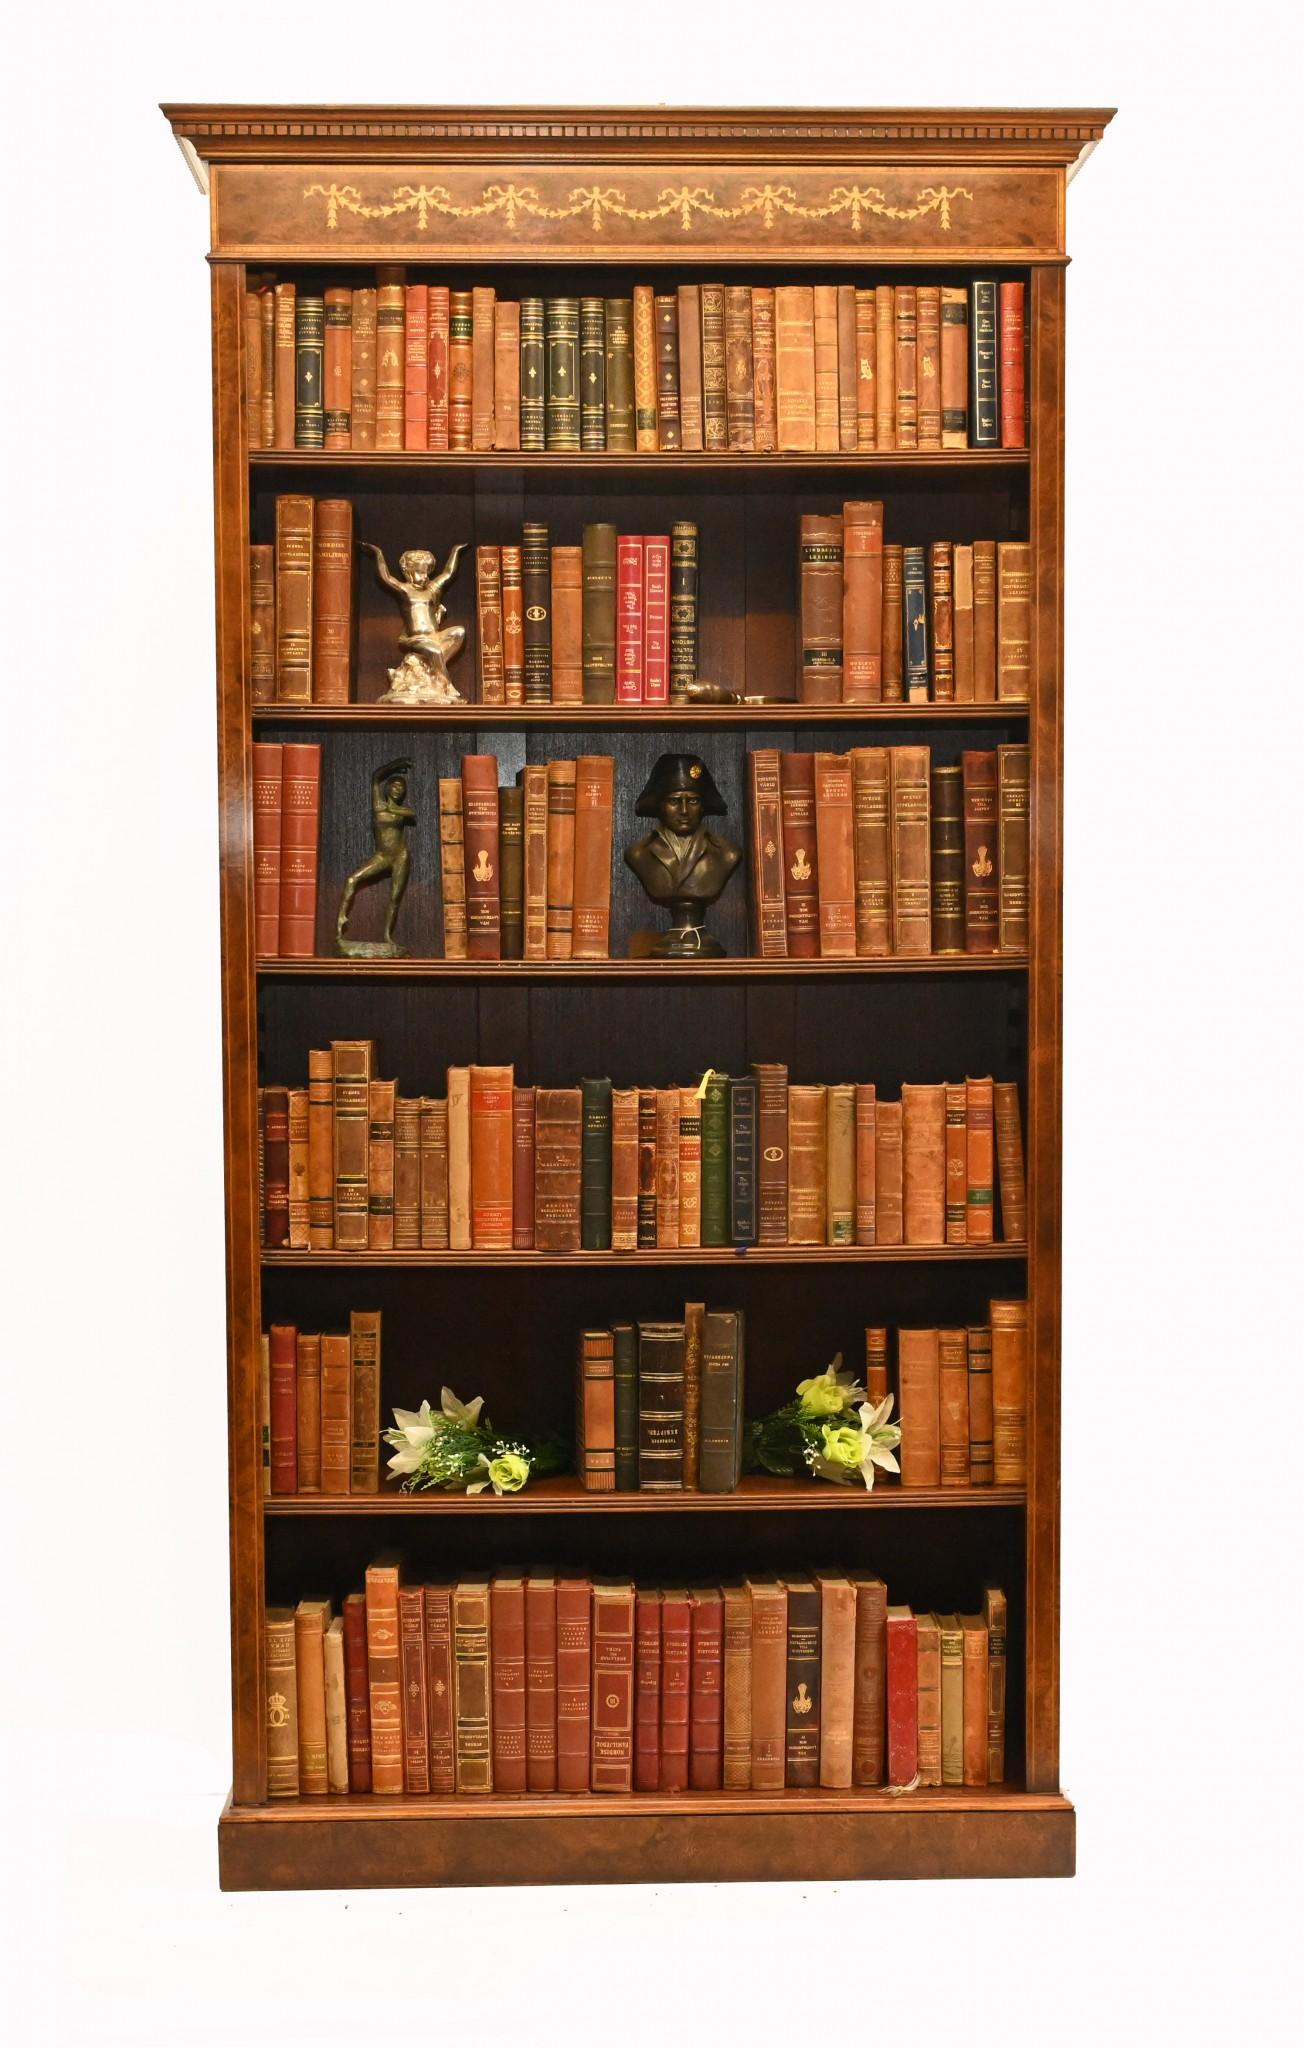 Sie sehen hier ein einzelnes offenes Bücherregal im englischen Sheraton-Stil, handgefertigt aus feinstem Nussbaumholz. Dieses reizende Stück ist die perfekte Mischung aus dekorativer Schönheit und praktischer Funktionalität, die es zu einem